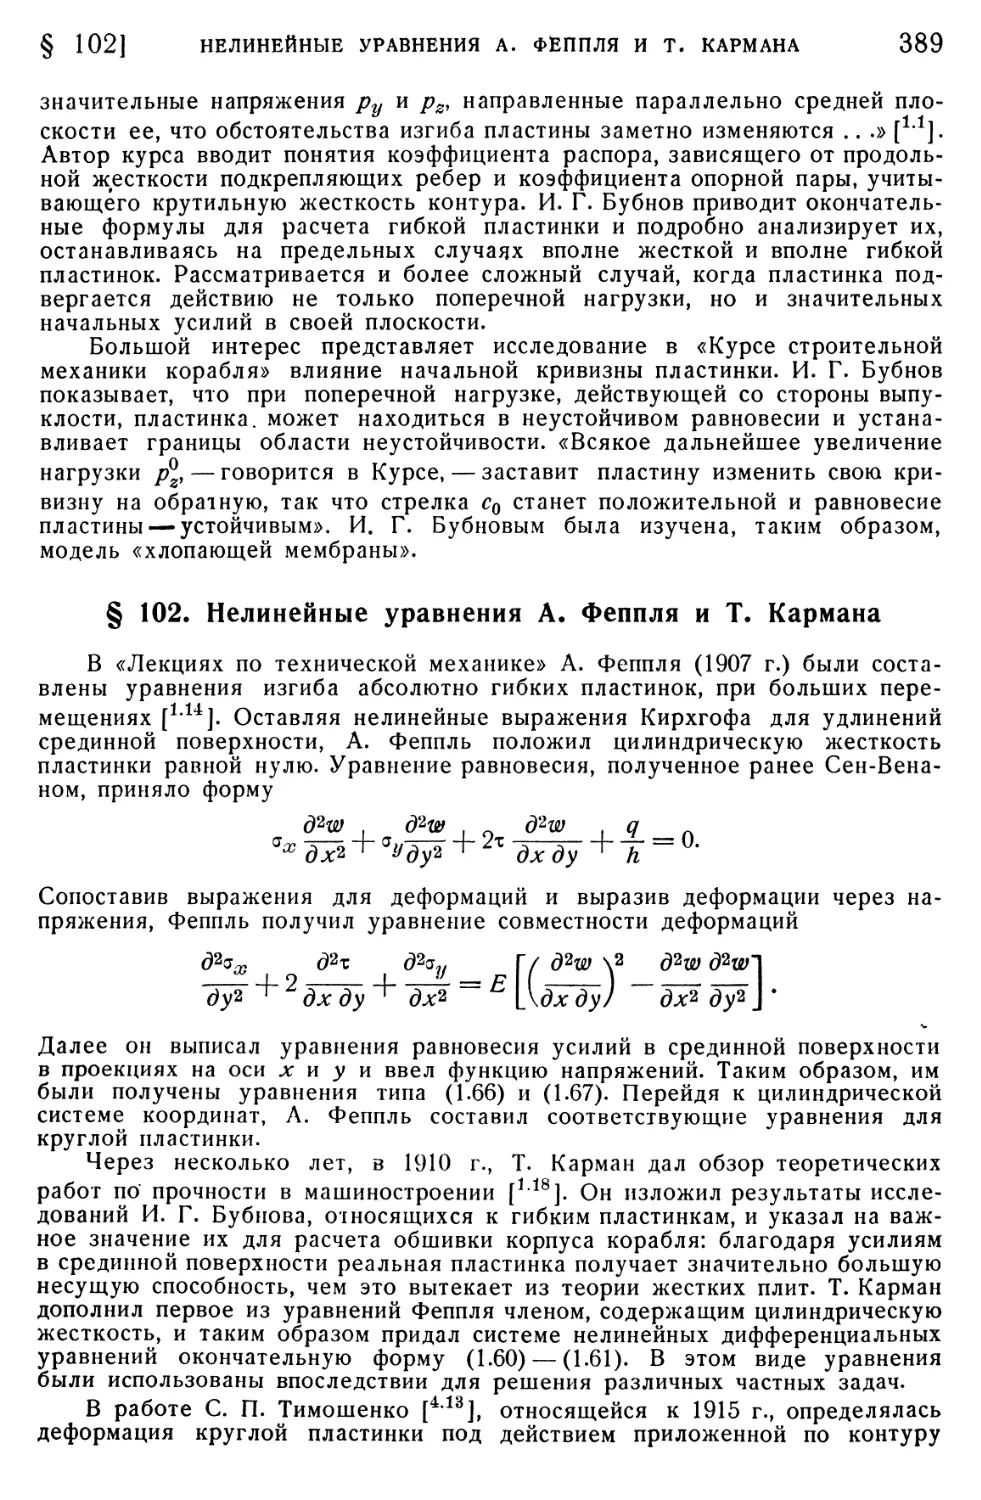 § 102. Нелинейные уравнения А. Феппля и Т. Кармана